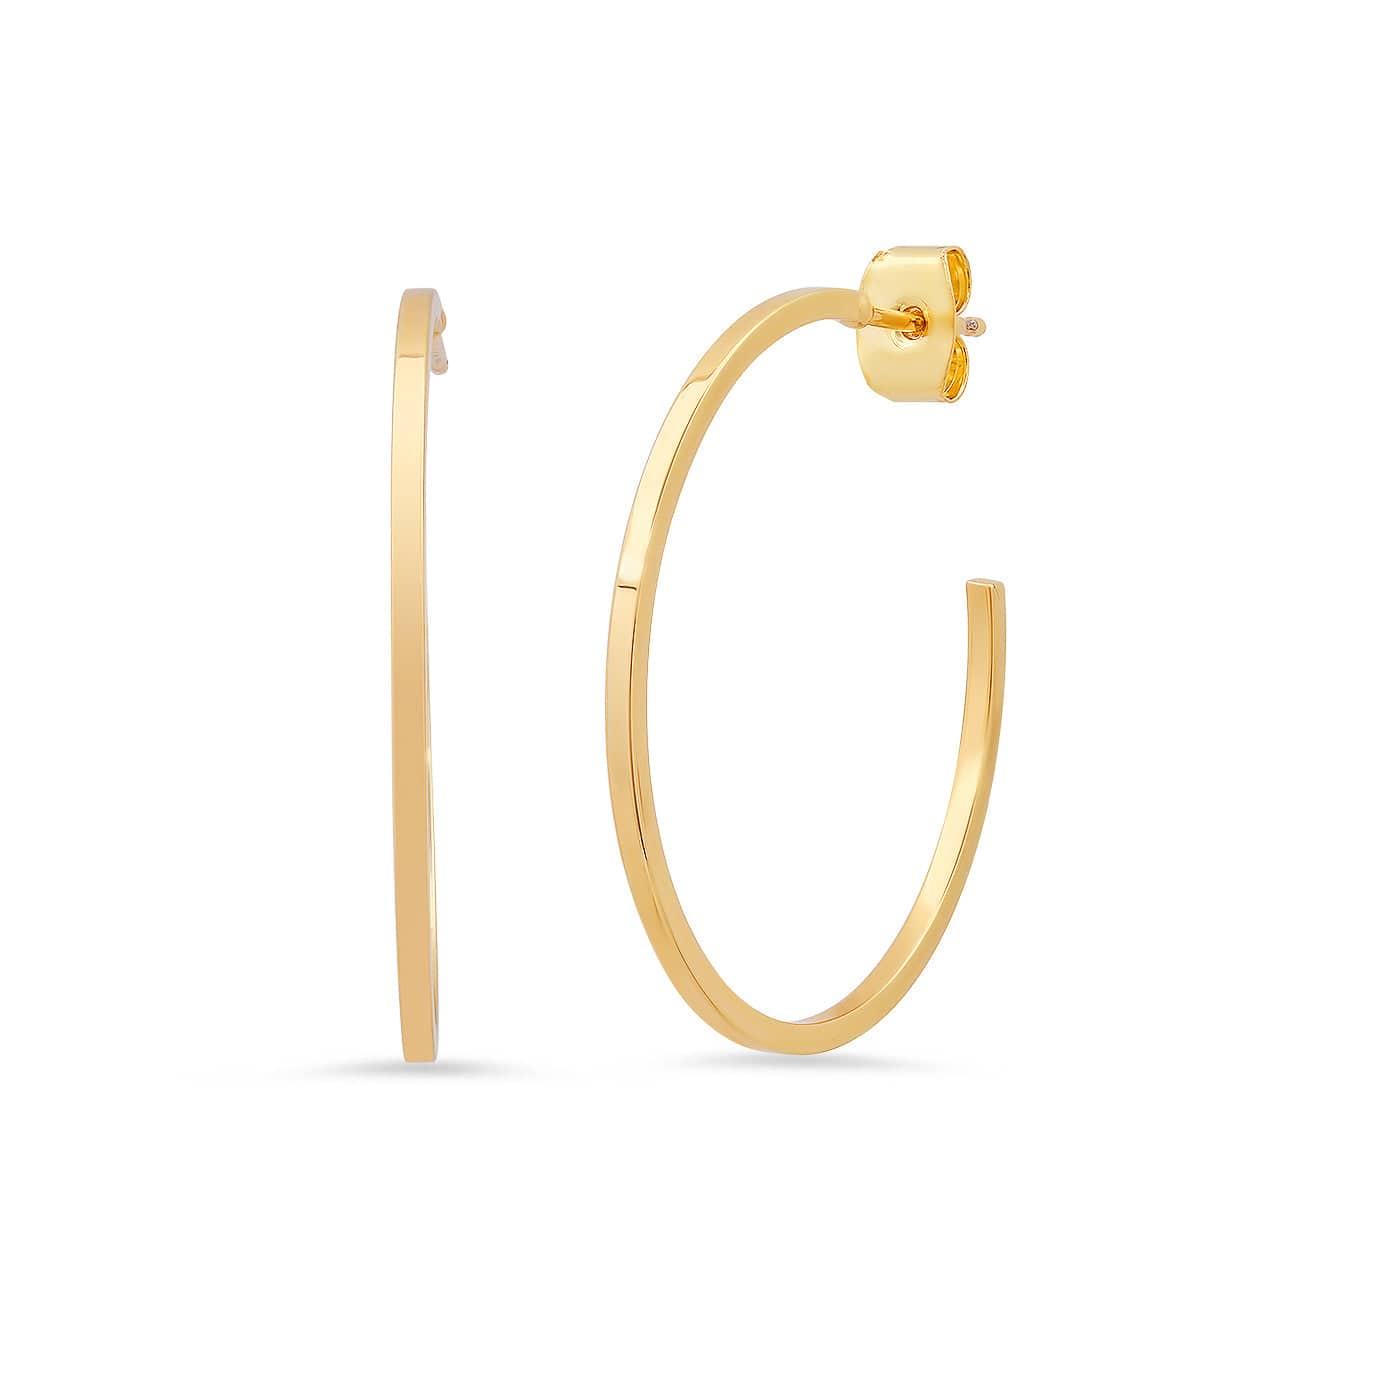 TAI JEWELRY Earrings Sleek Medium Gold Hoop